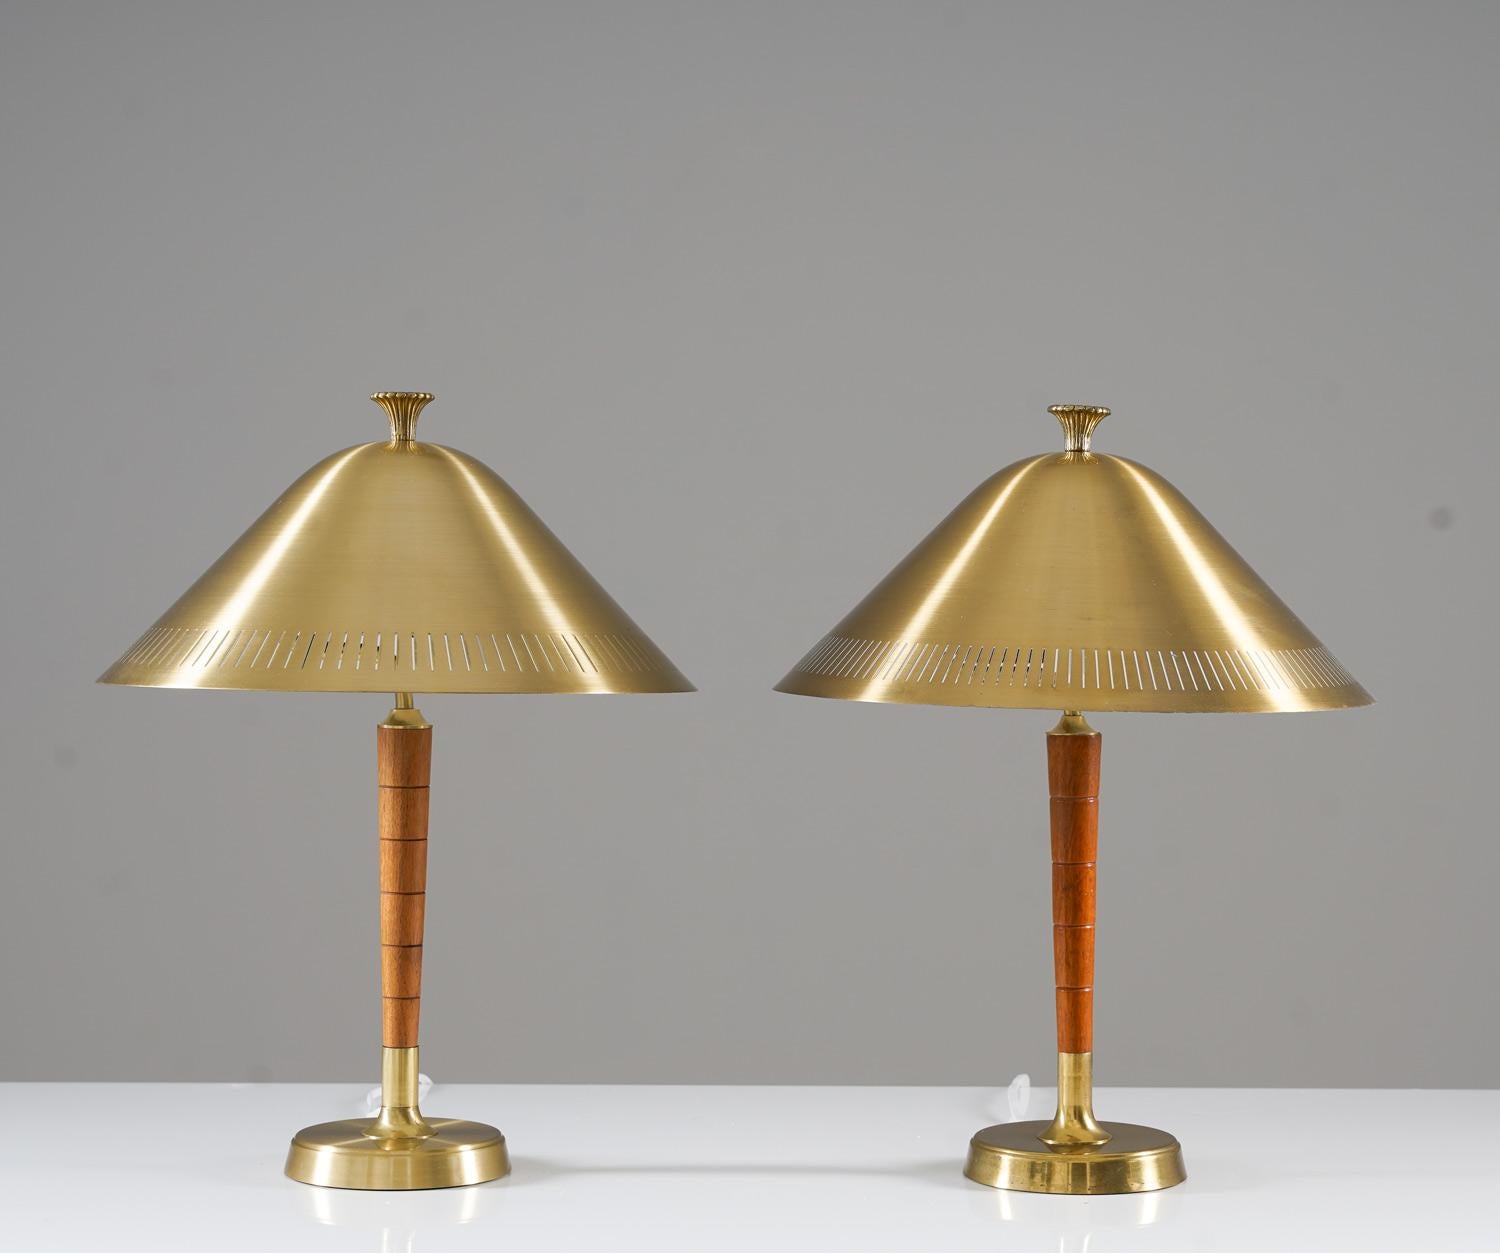 Schöne Tischlampen, hergestellt von Falkenbergs Belysning, Schweden.
Die Lampen haben einen großen perforierten Messingschirm, der die Glühbirne verdeckt. Die Schirme werden von Messingstäben mit Holzdetails getragen. 

Zustand: Guter